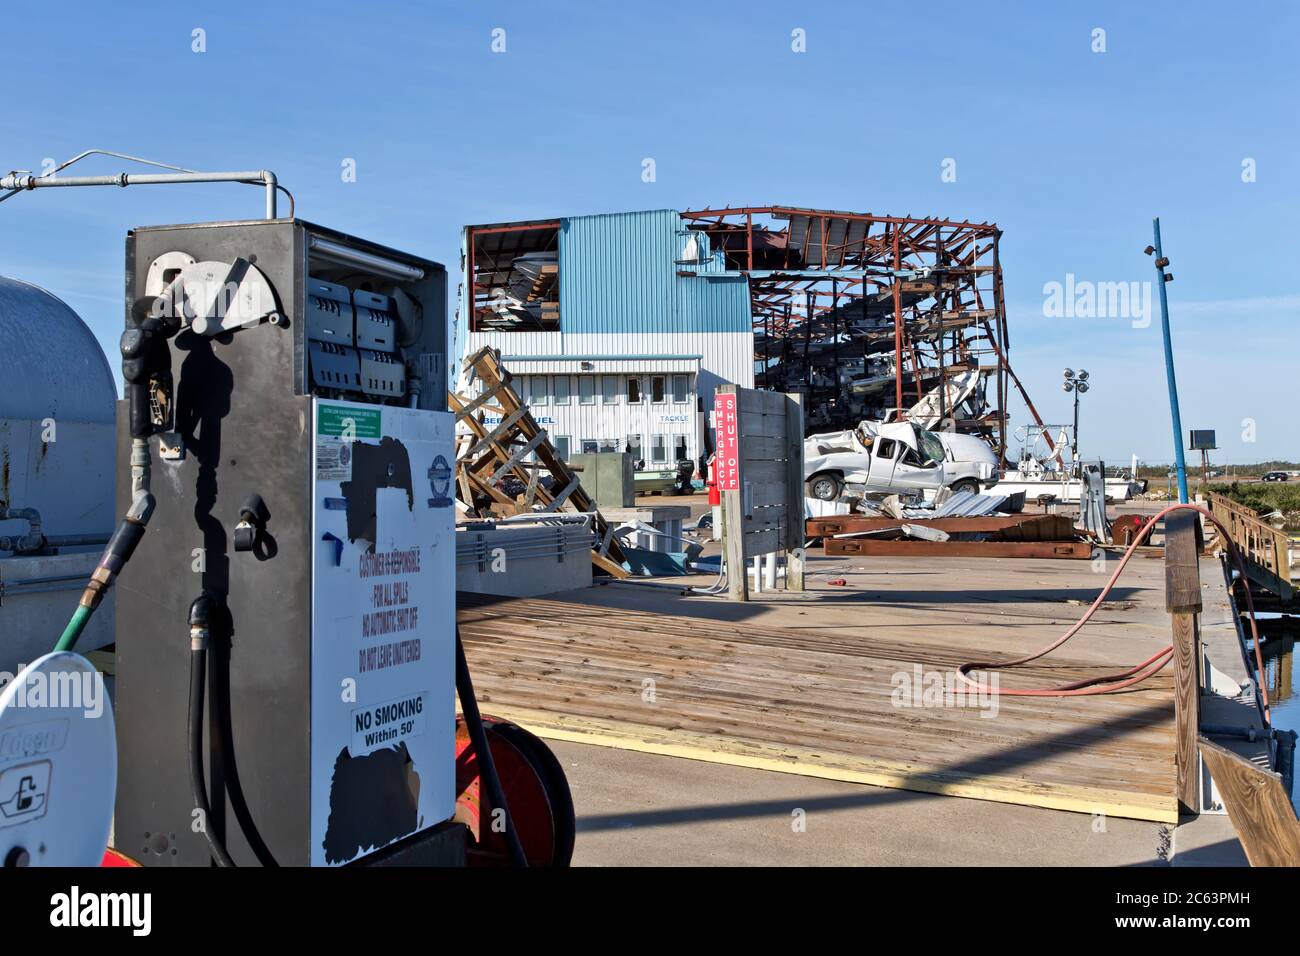 Destruction de la marina et de la pile sèche de Cove Harbour, stockage, magasin et ravitaillement en carburant par l'ouragan Harvey en 2017, Rockport, Texas. Banque D'Images